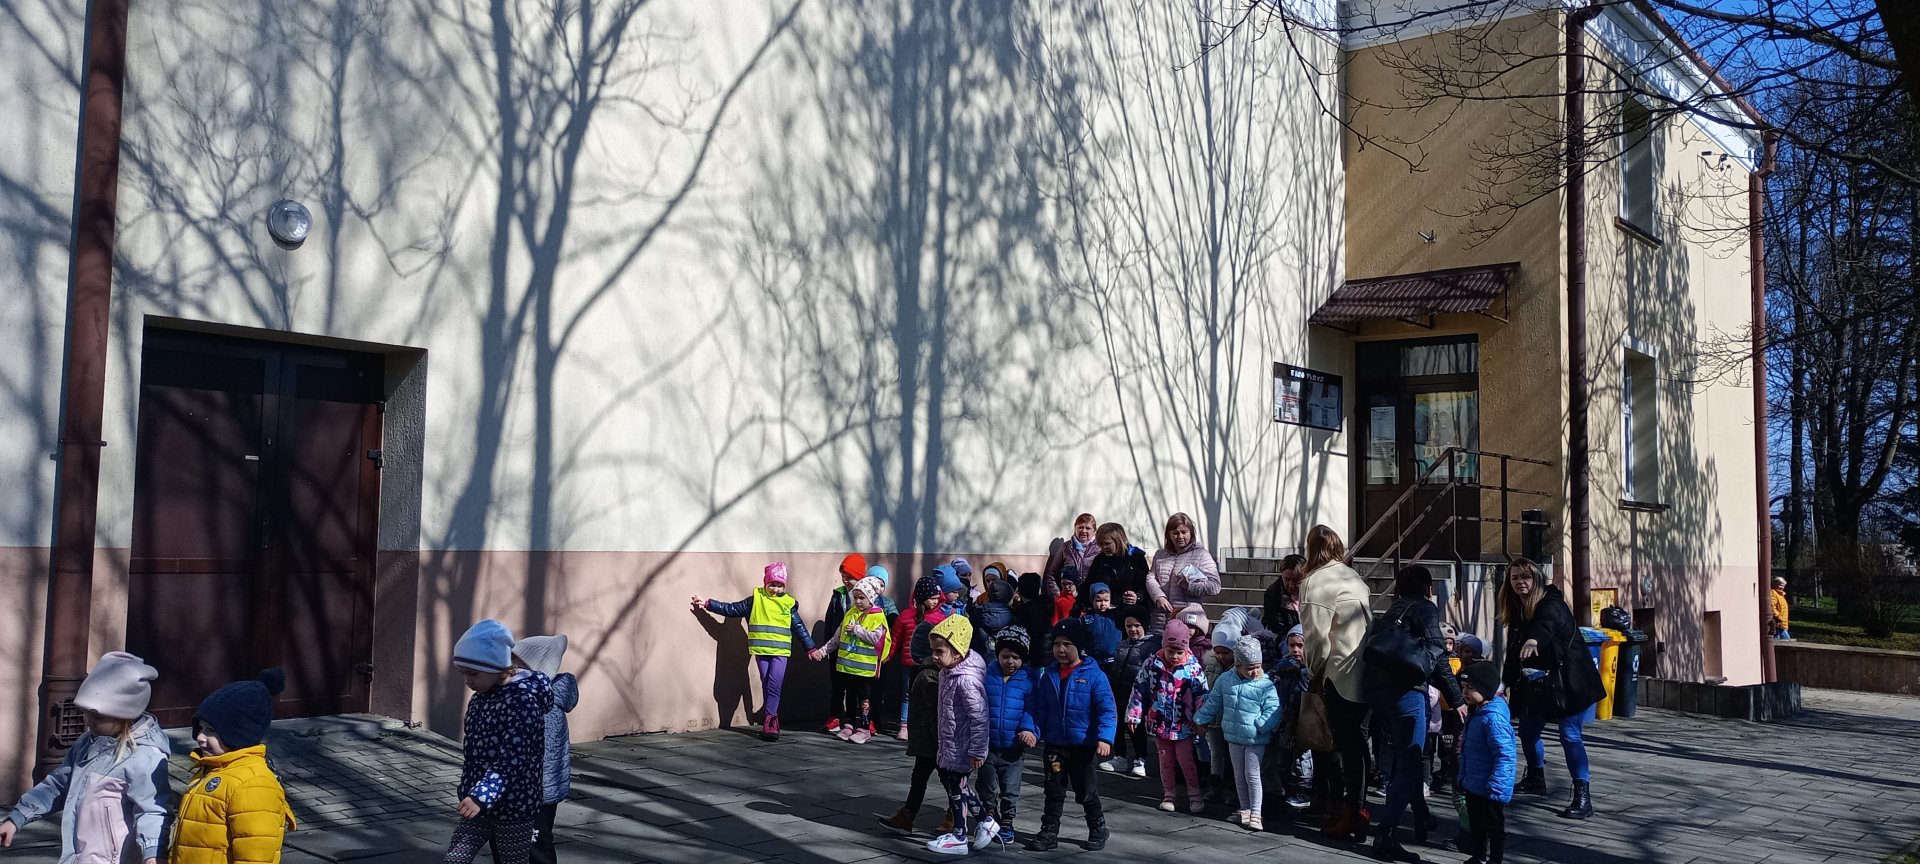 Grupy przedszkolne przed budynkiem kina Farys. Przedszkolaki ustawione parami oraz grupami ze swoimi wychowawcami.